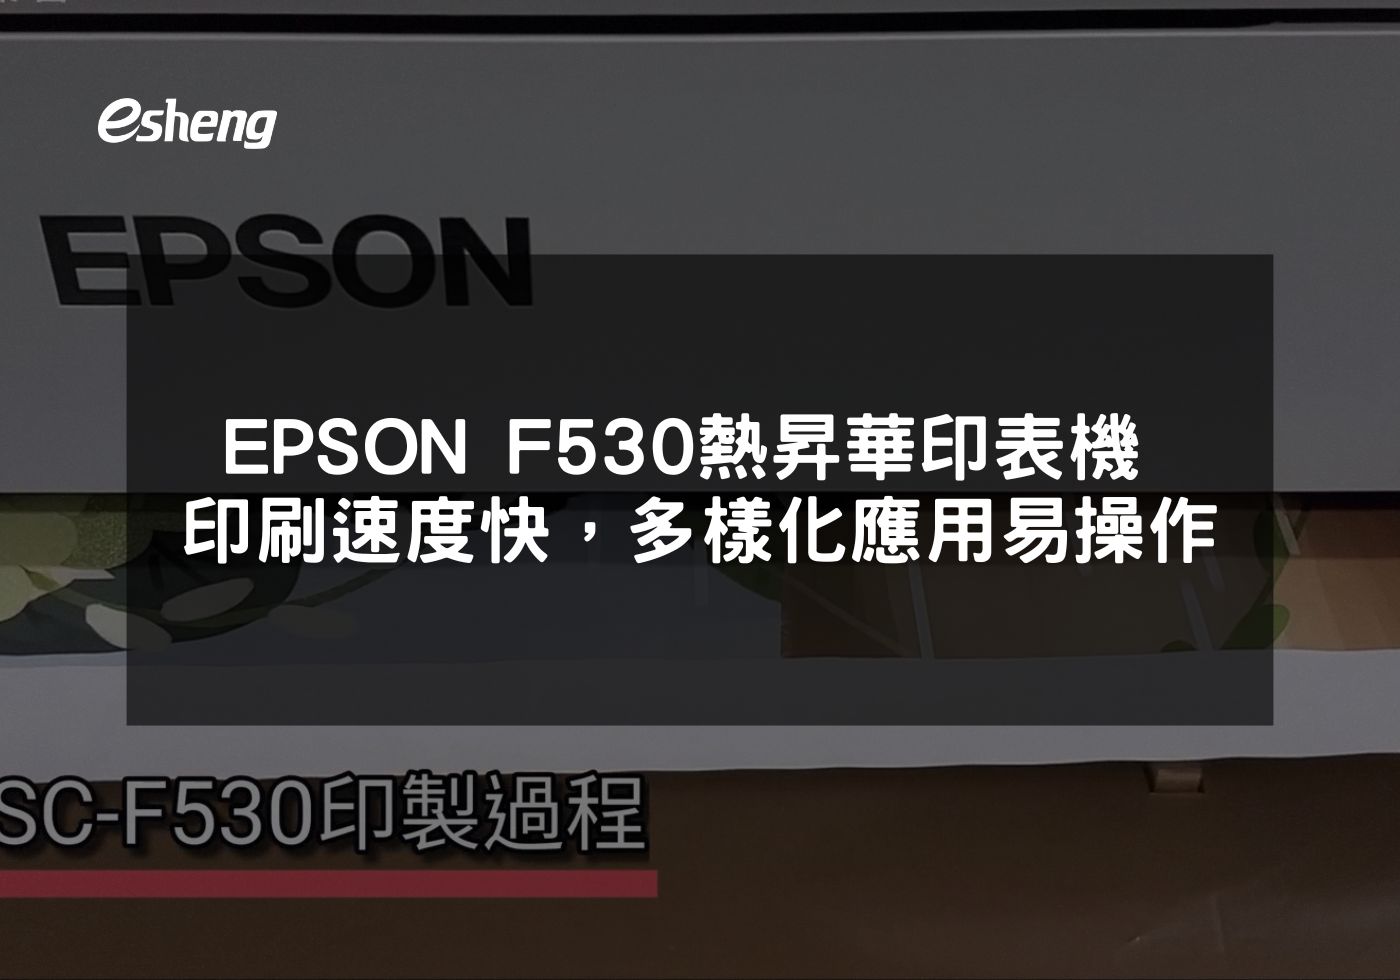 閱讀更多文章 EPSON F530 熱昇華印表機 高品質印刷速度快，多樣化應用易操作